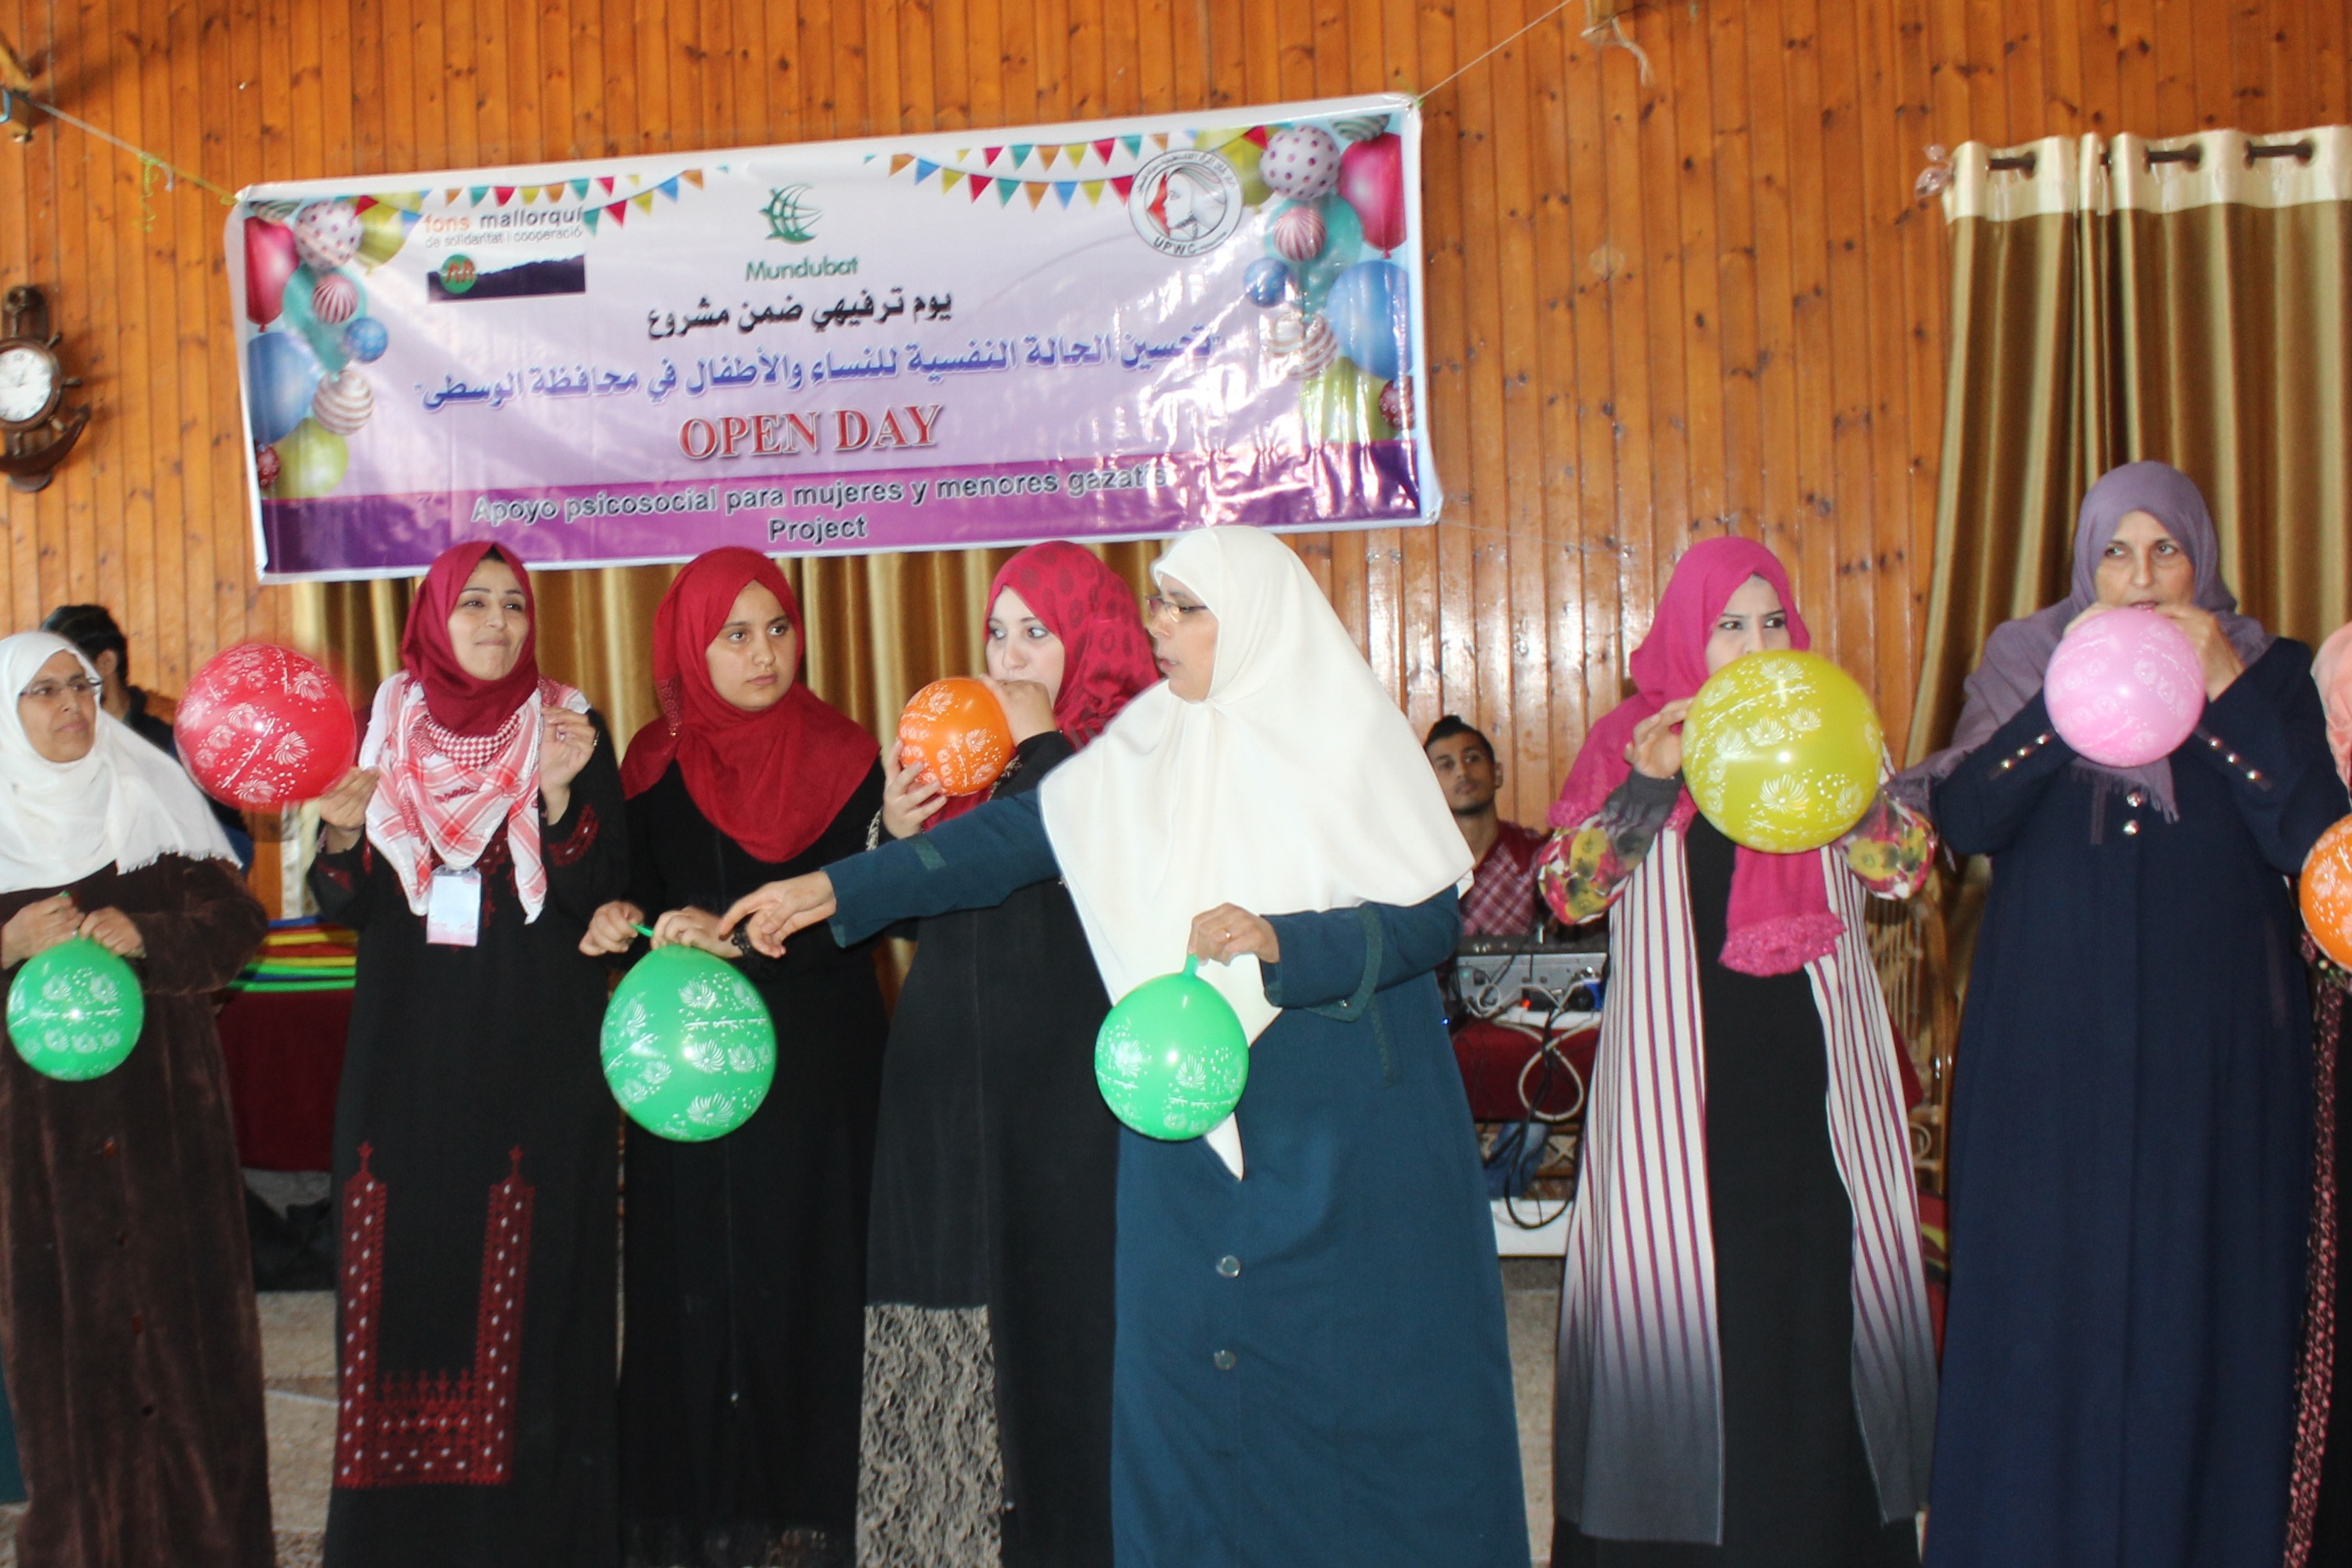 اتحاد لجان المرأة الفلسطينية ينفذ يوما ترفيهيا للنساء في الوسطى